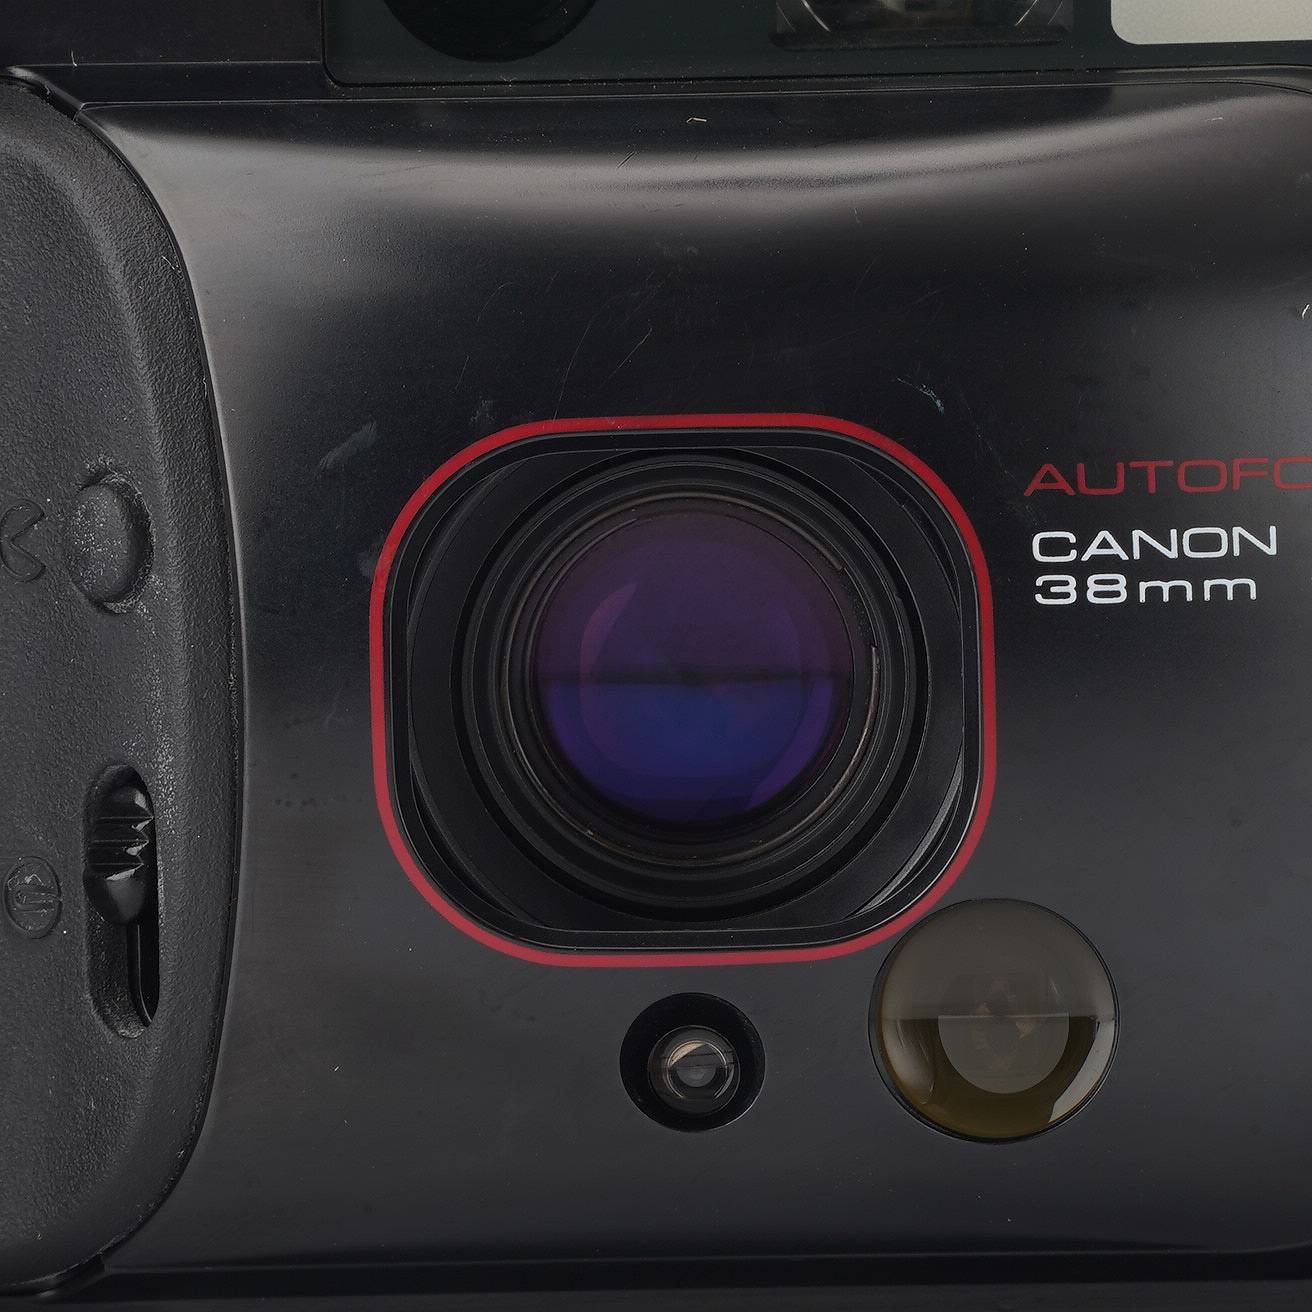 キヤノン Canon Autoboy 3 QUARTZ DATE / 38mm F2.8 – Natural Camera ...